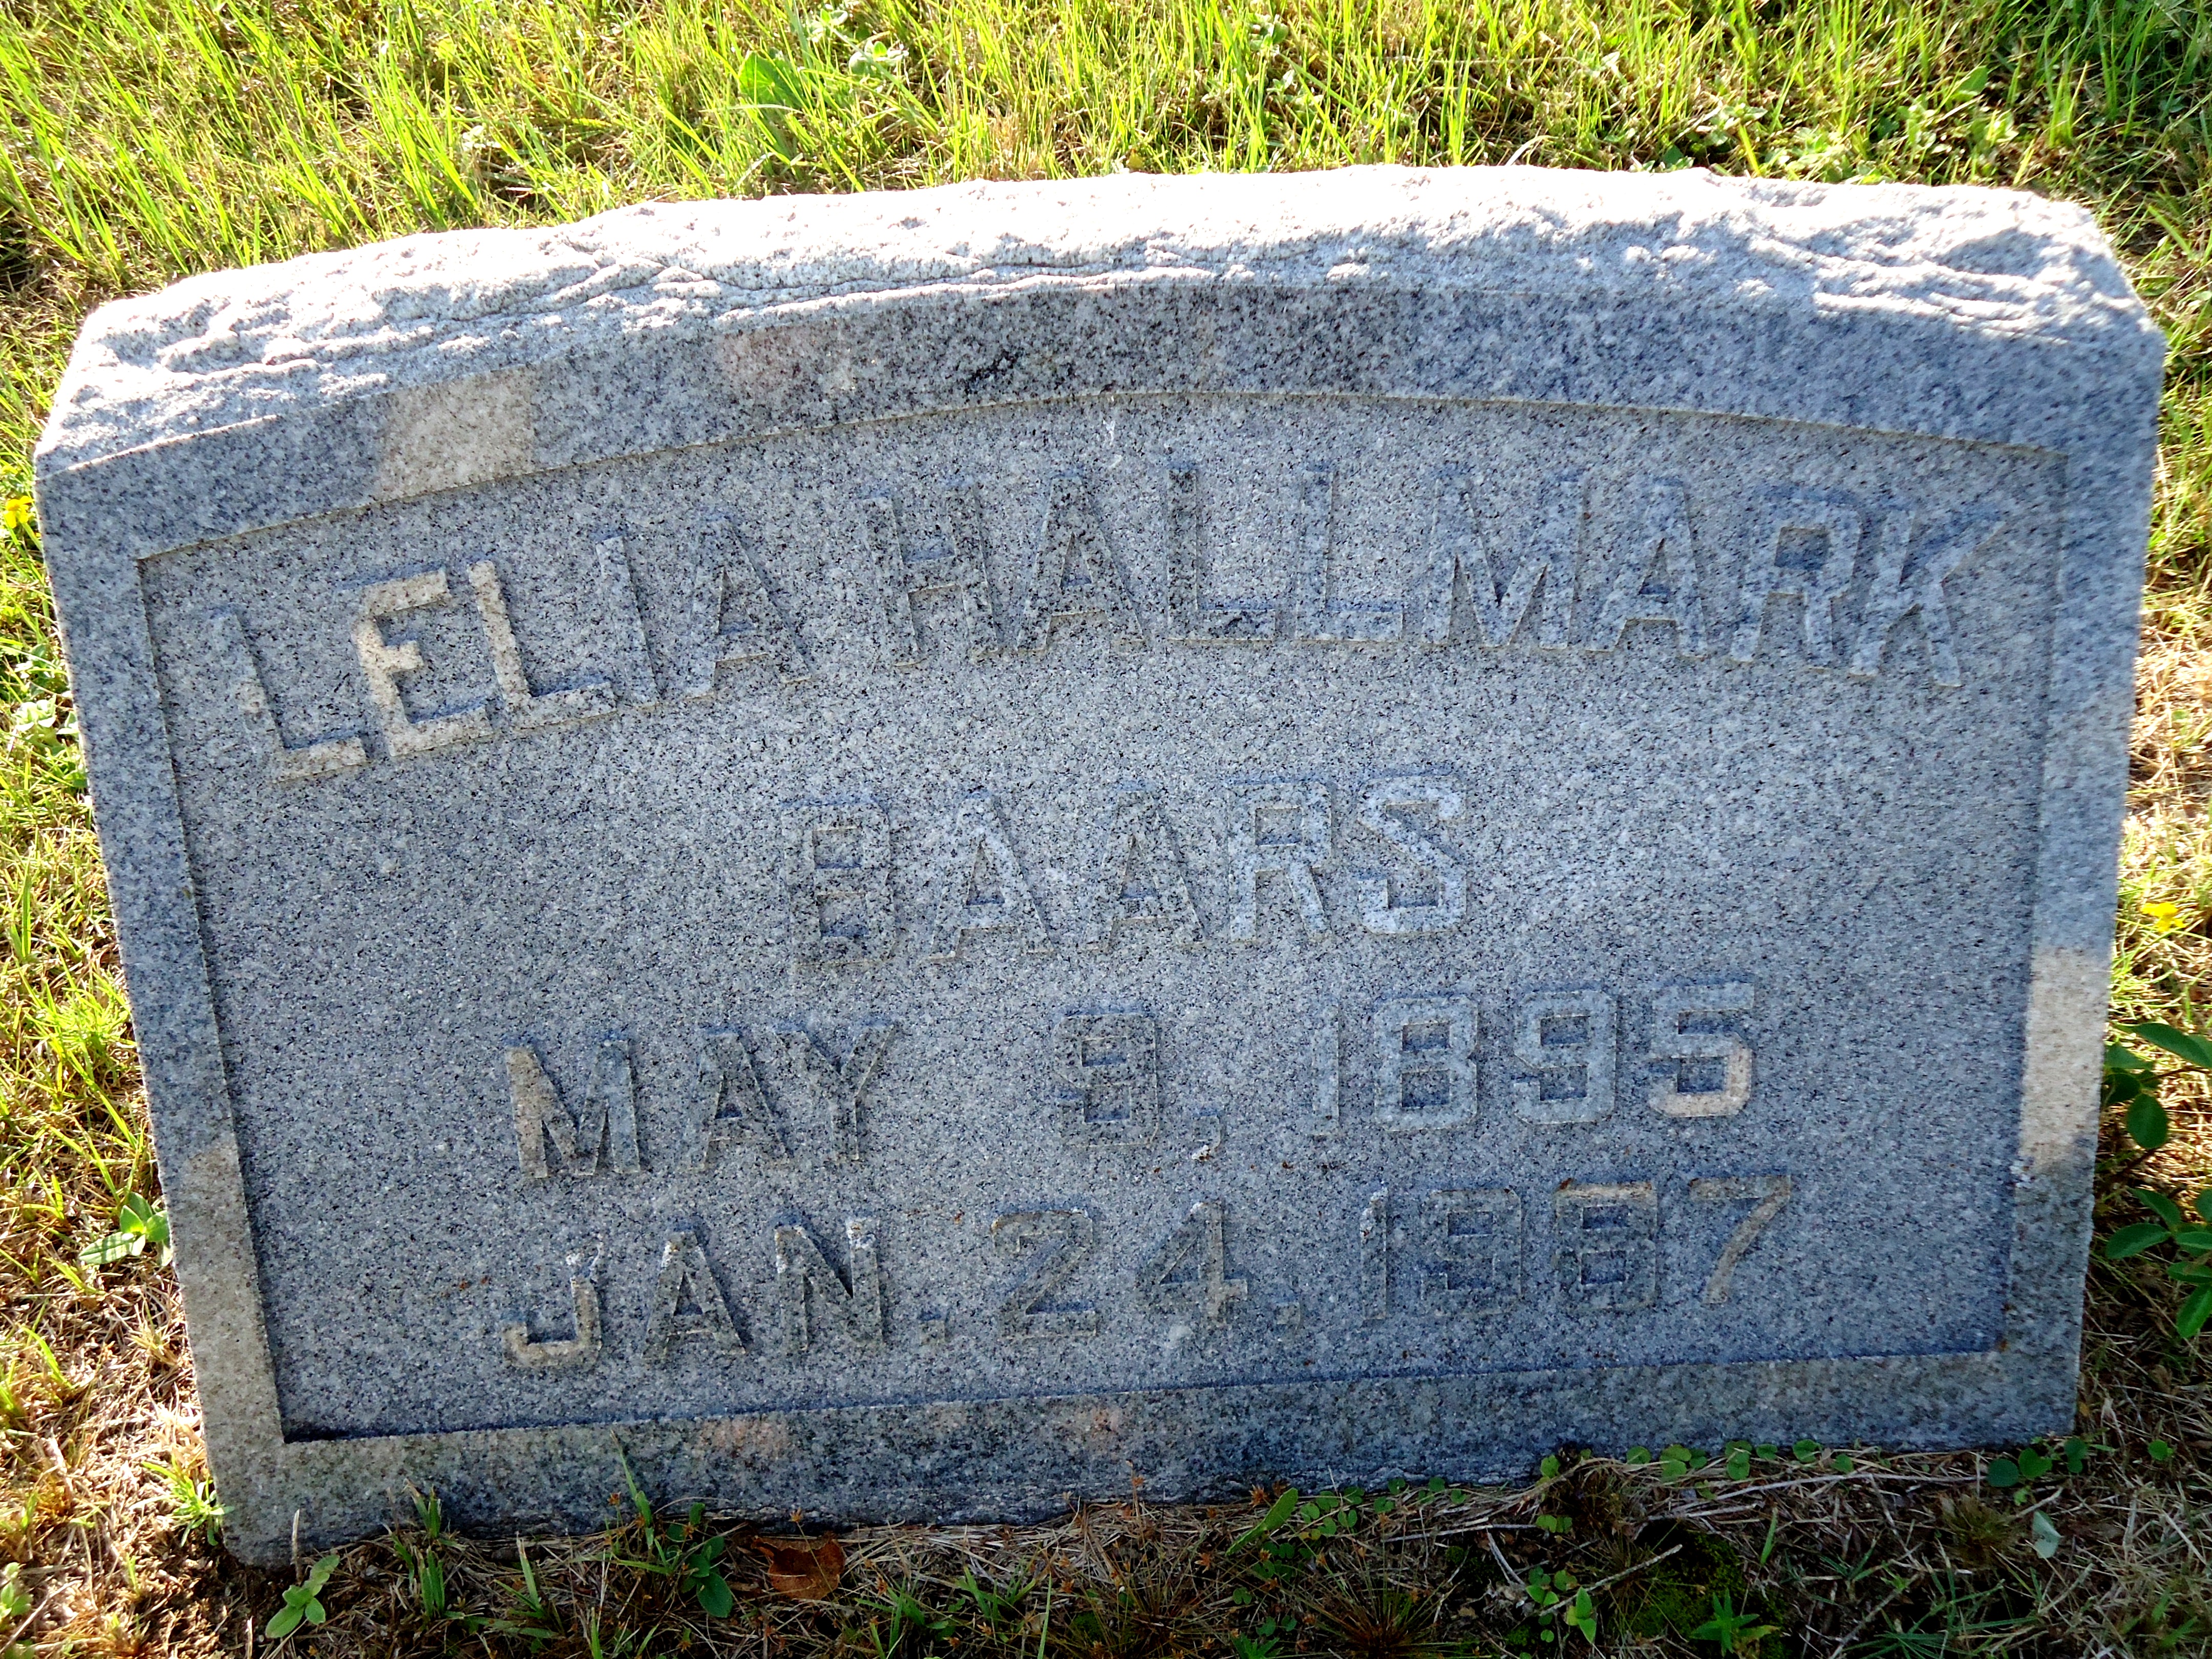 Lelia Catherine Hallmark Baars